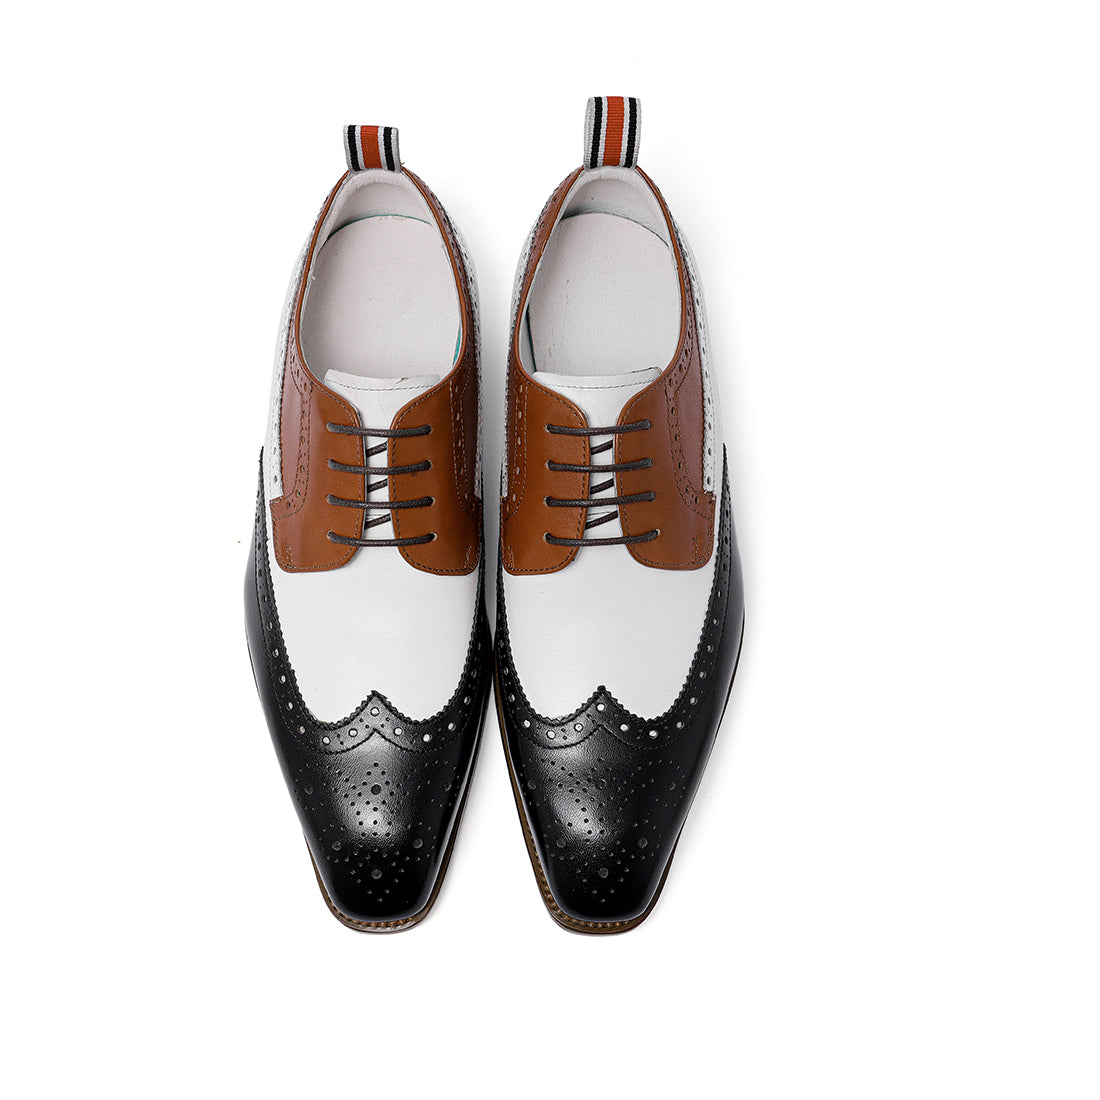 Brogues & Wingtip Shoes Guide for Men – Santimon